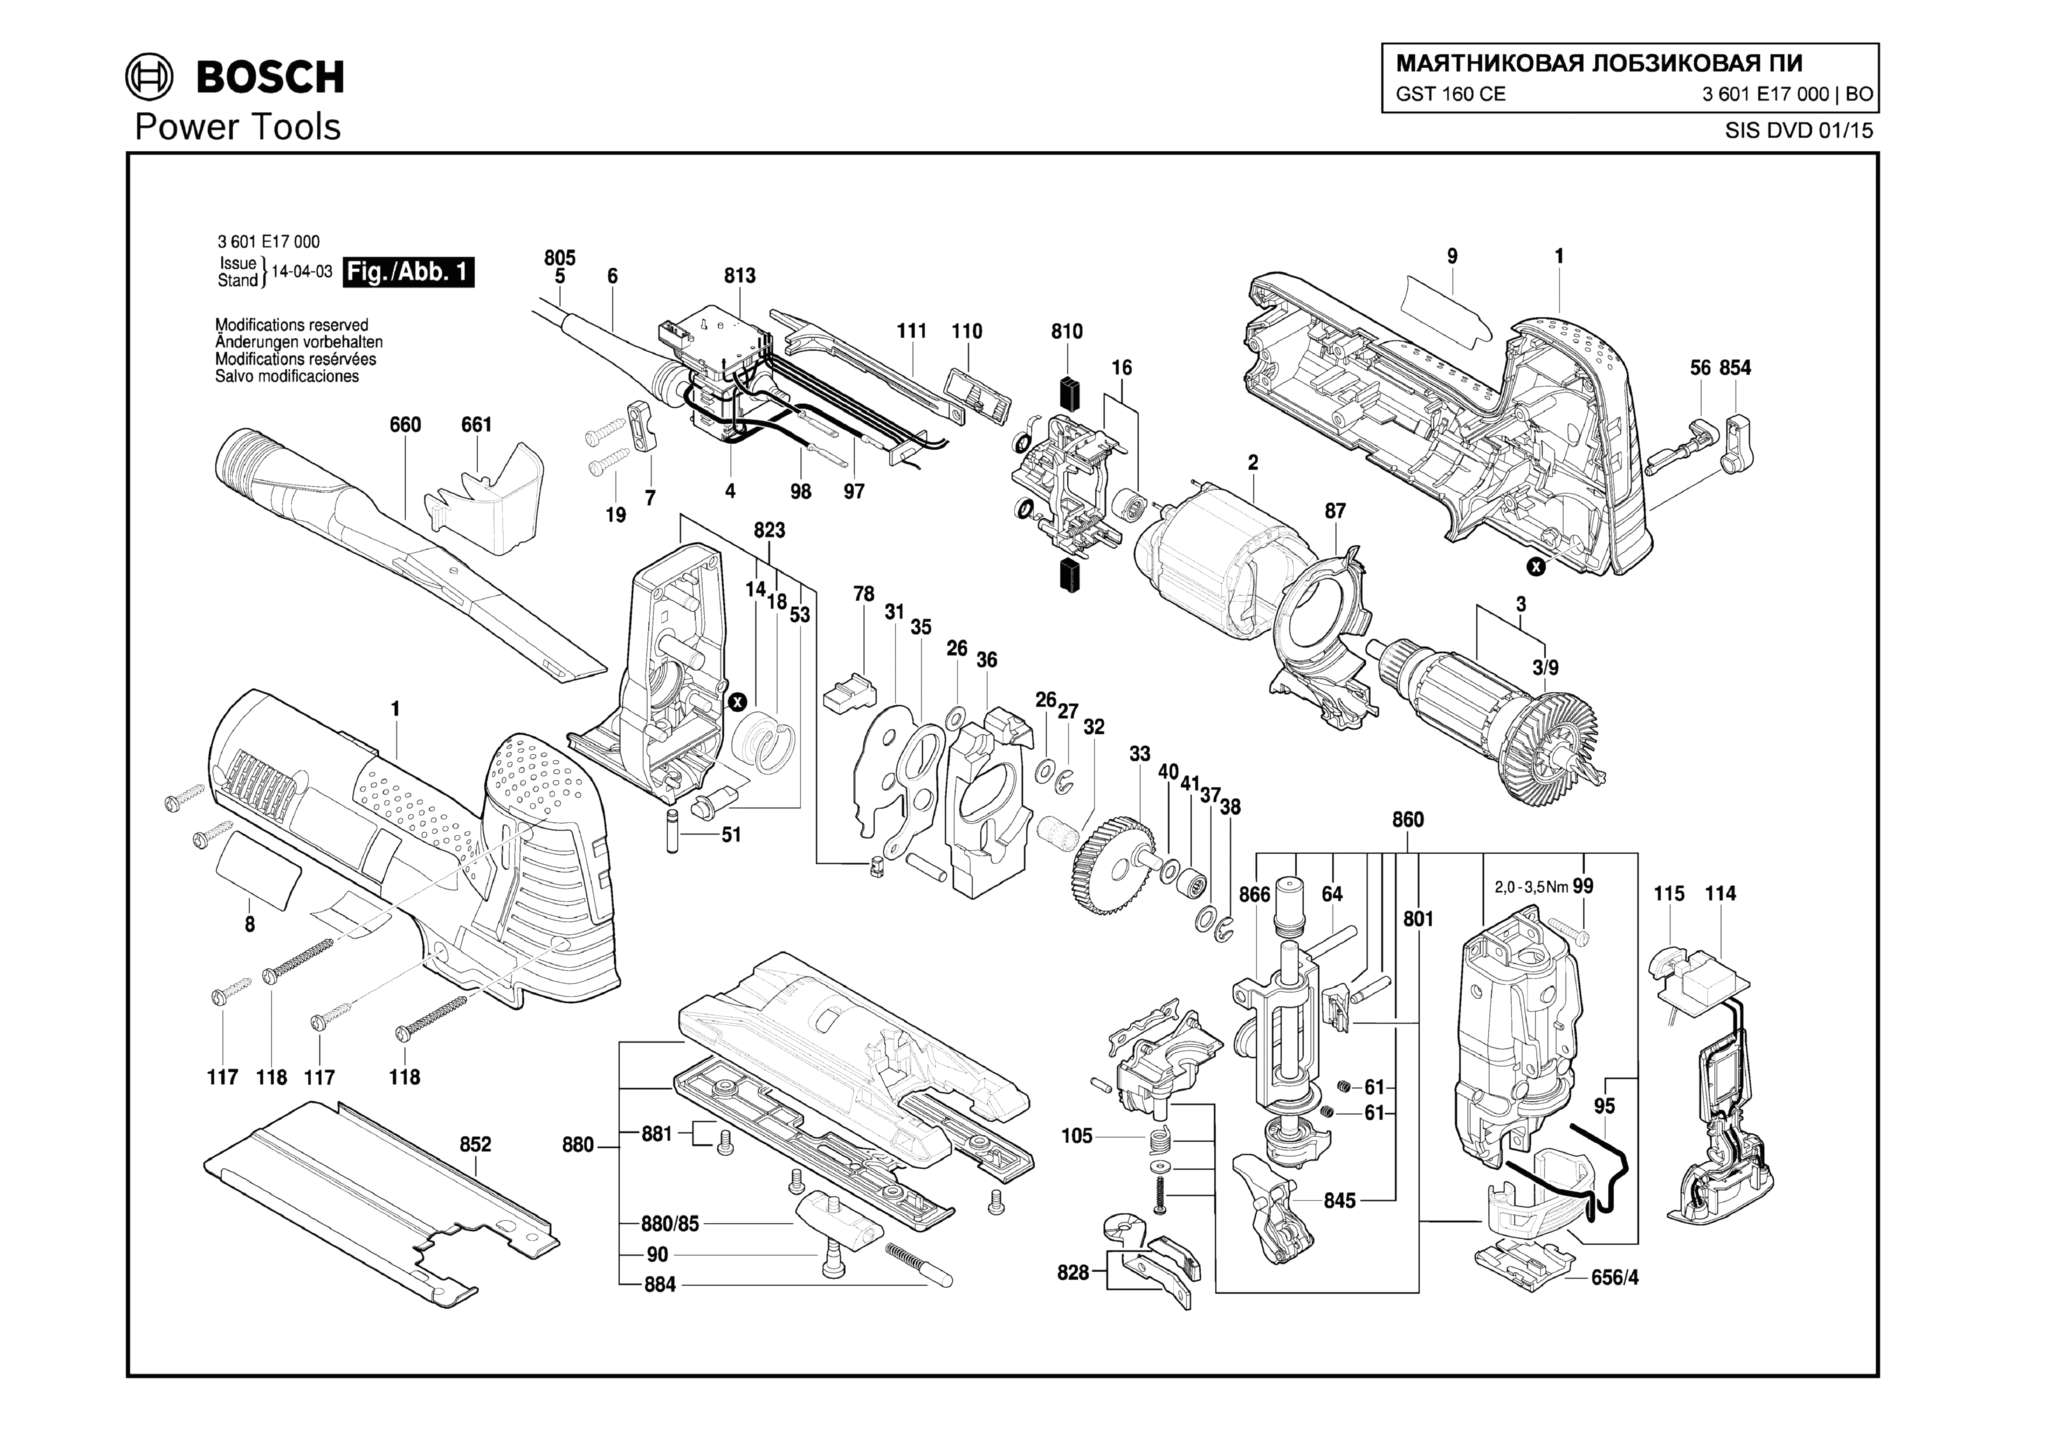 Запчасти, схема и деталировка Bosch GST 160 CE (ТИП 3601E17000)